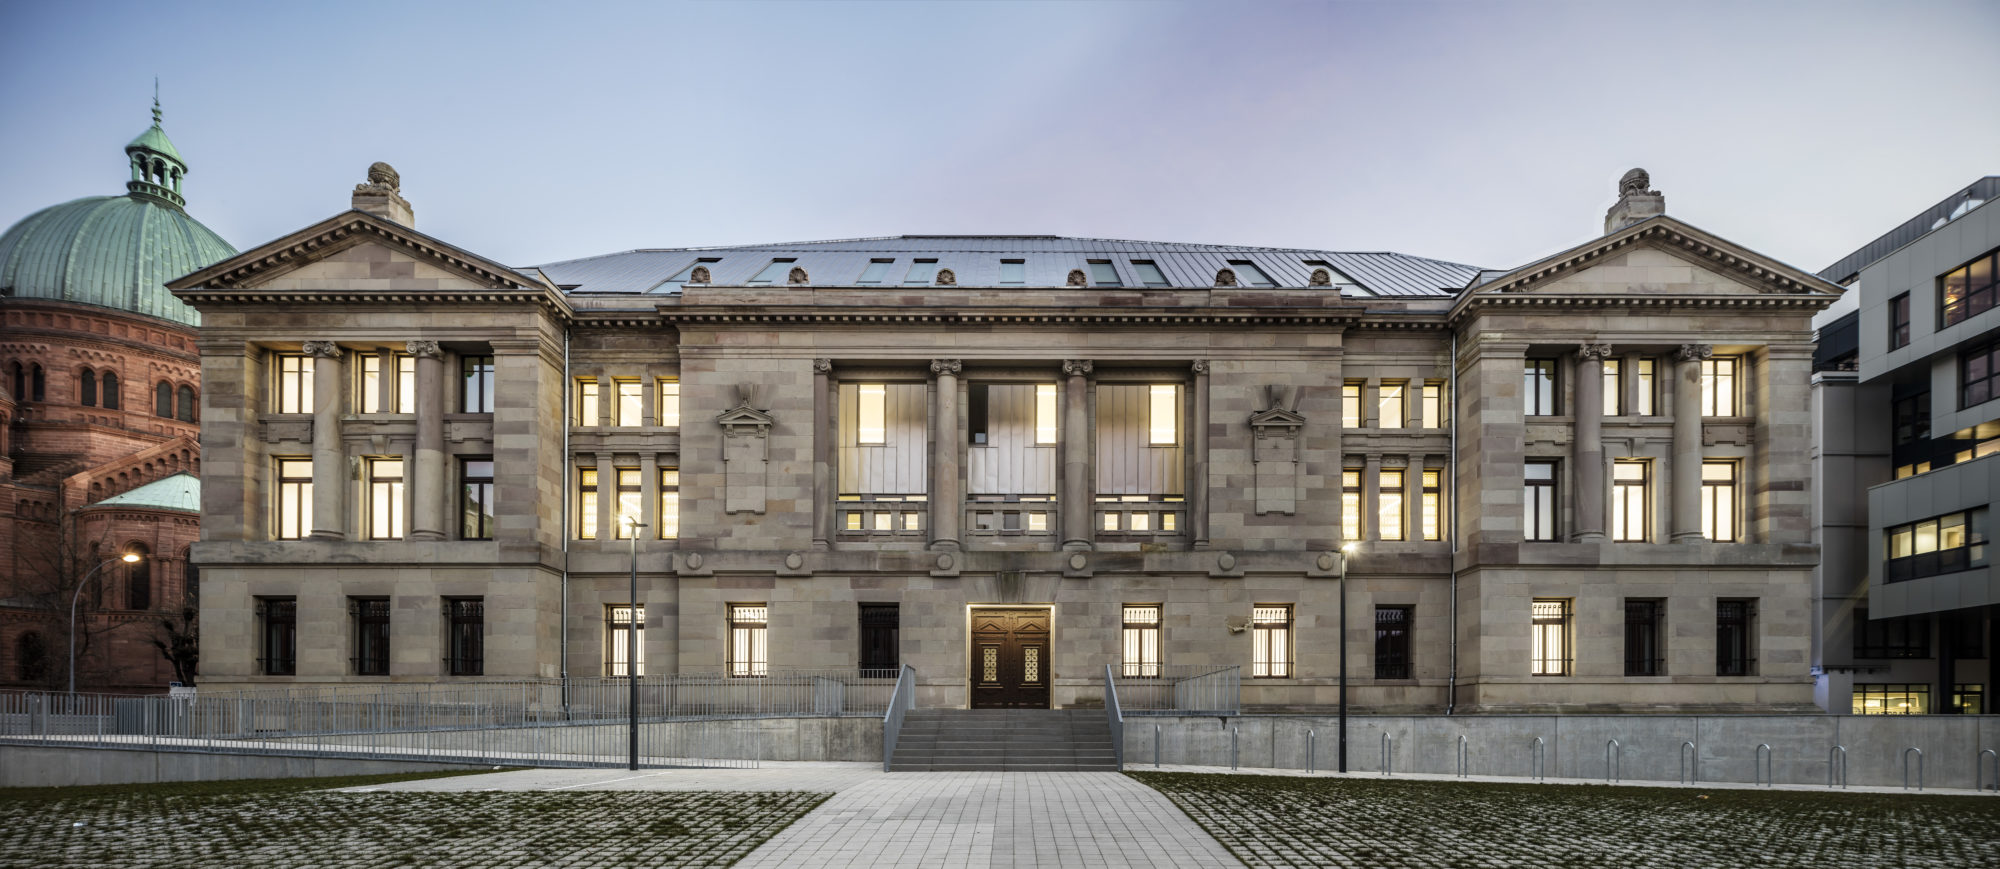 Palacio de Justicia de Estrasburgo - Garcés - de Seta - Bonet